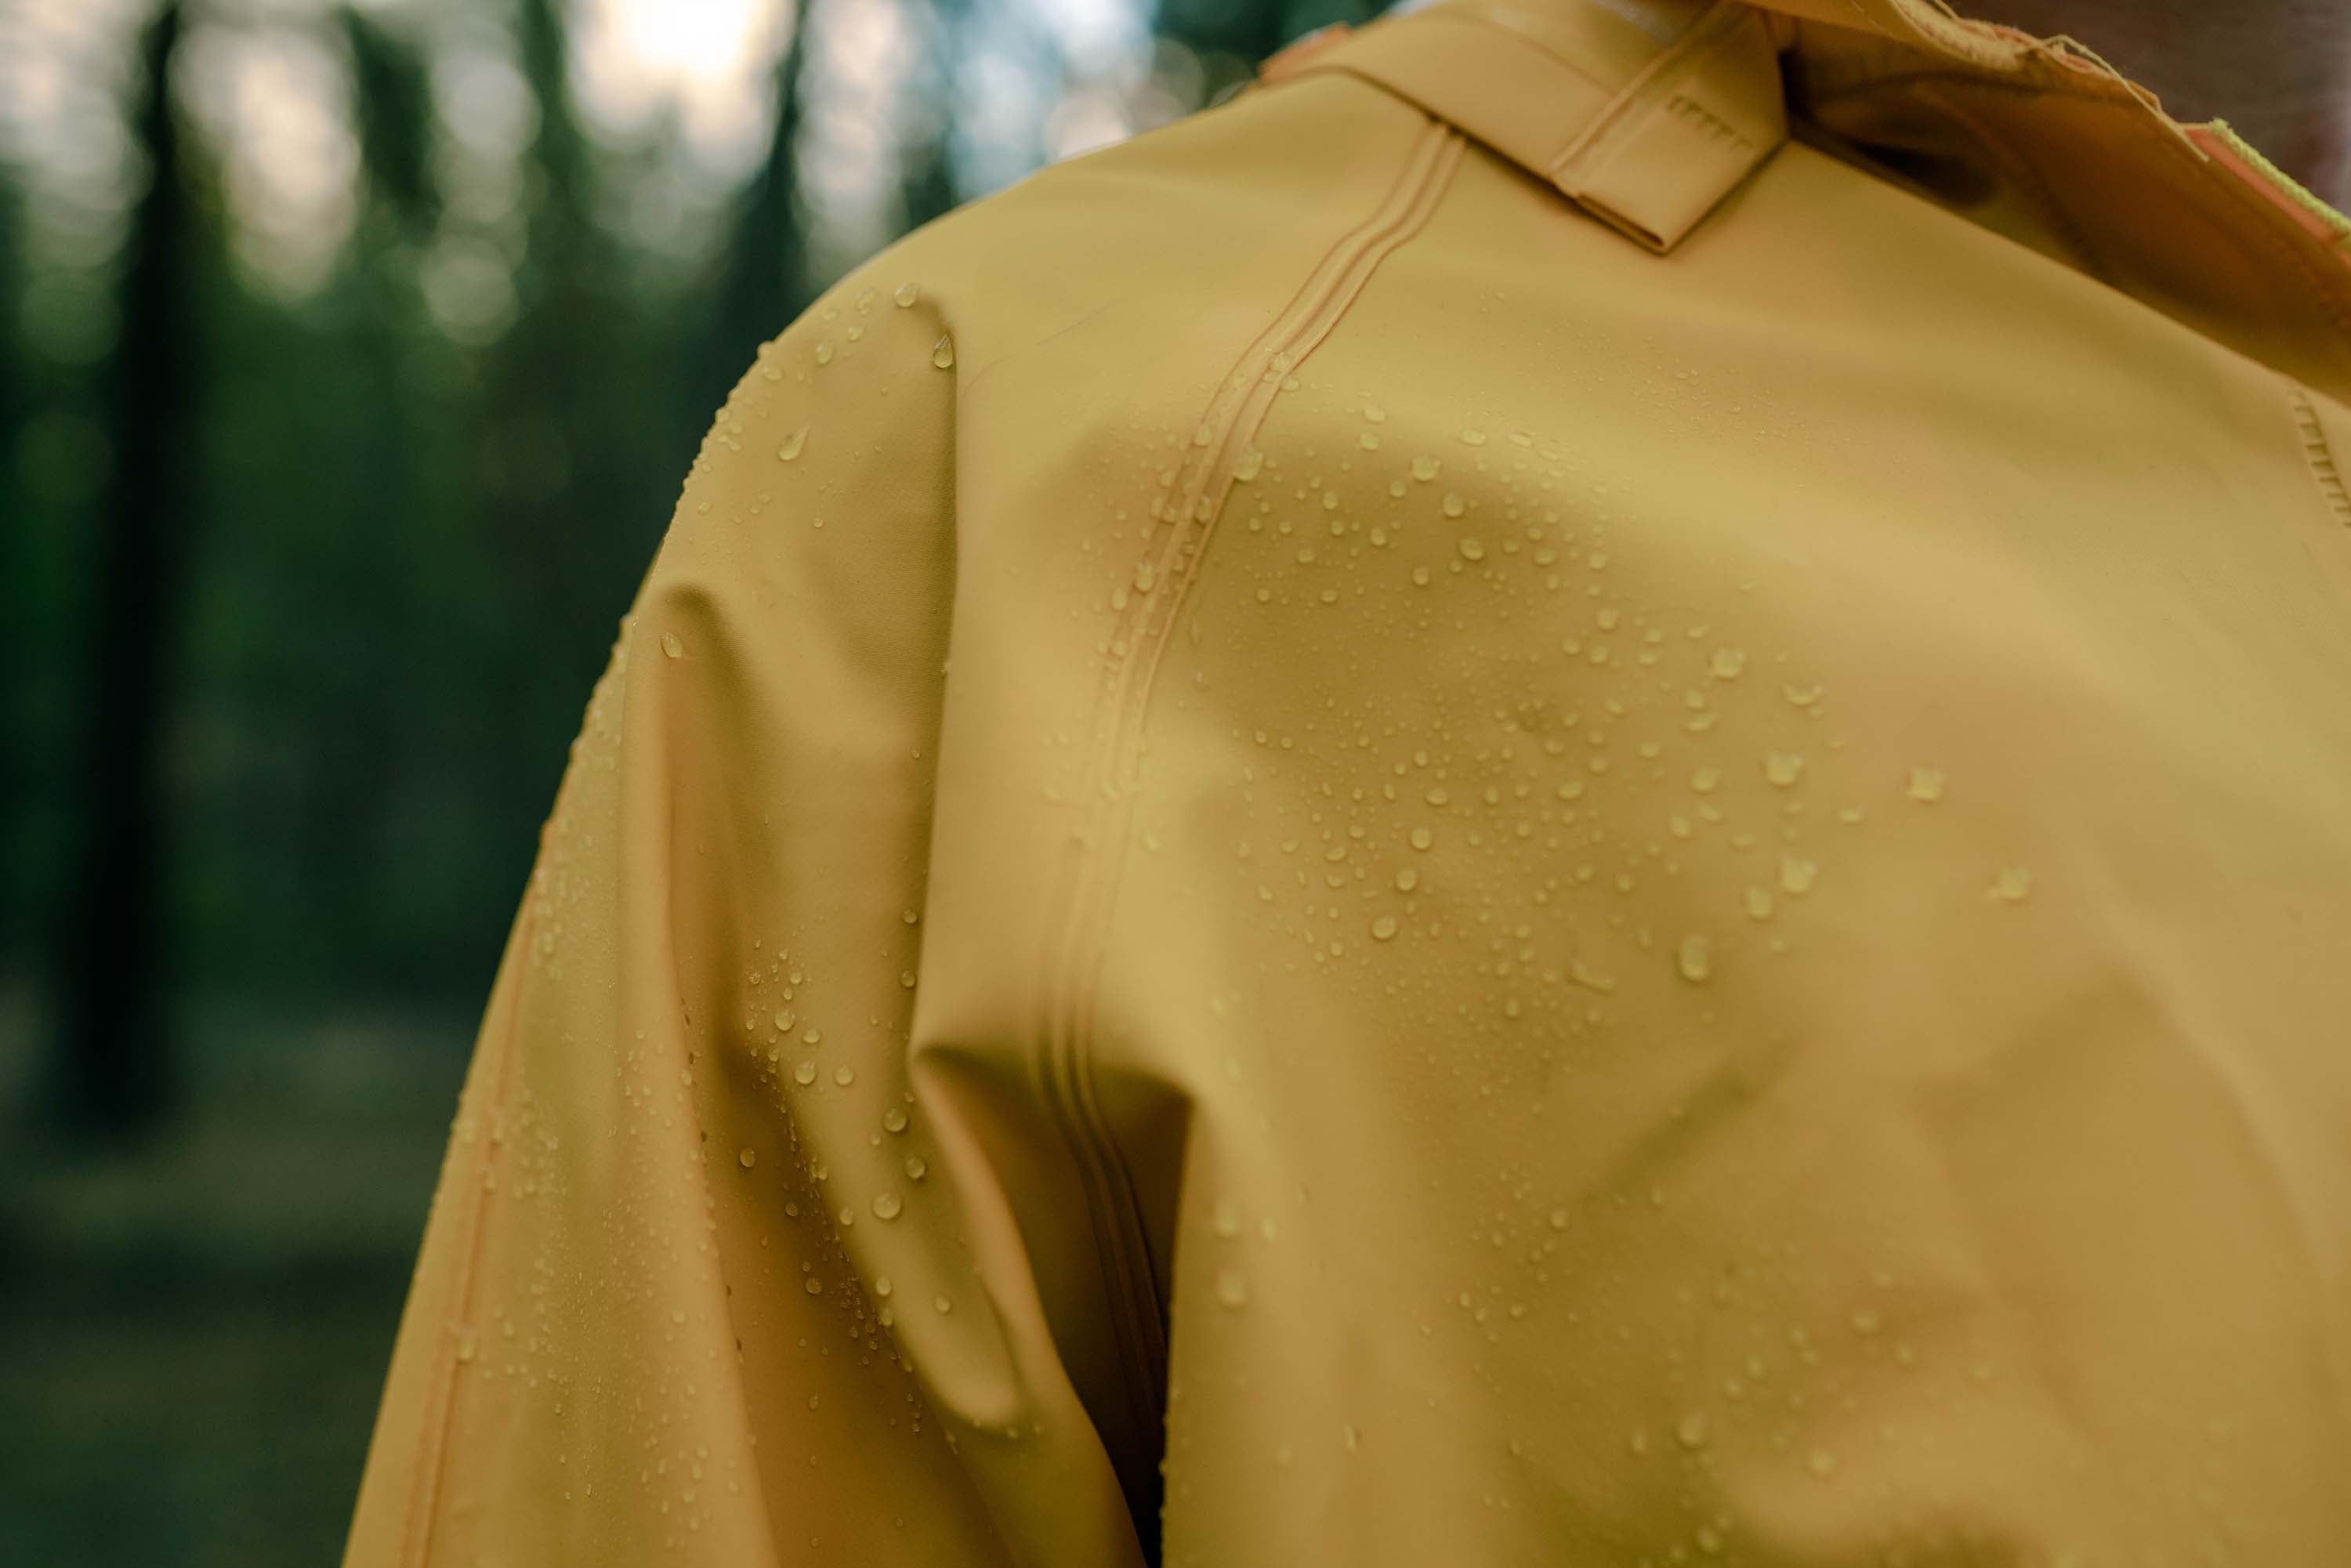 Commercial Rainsuit - Yellow - 3Xl